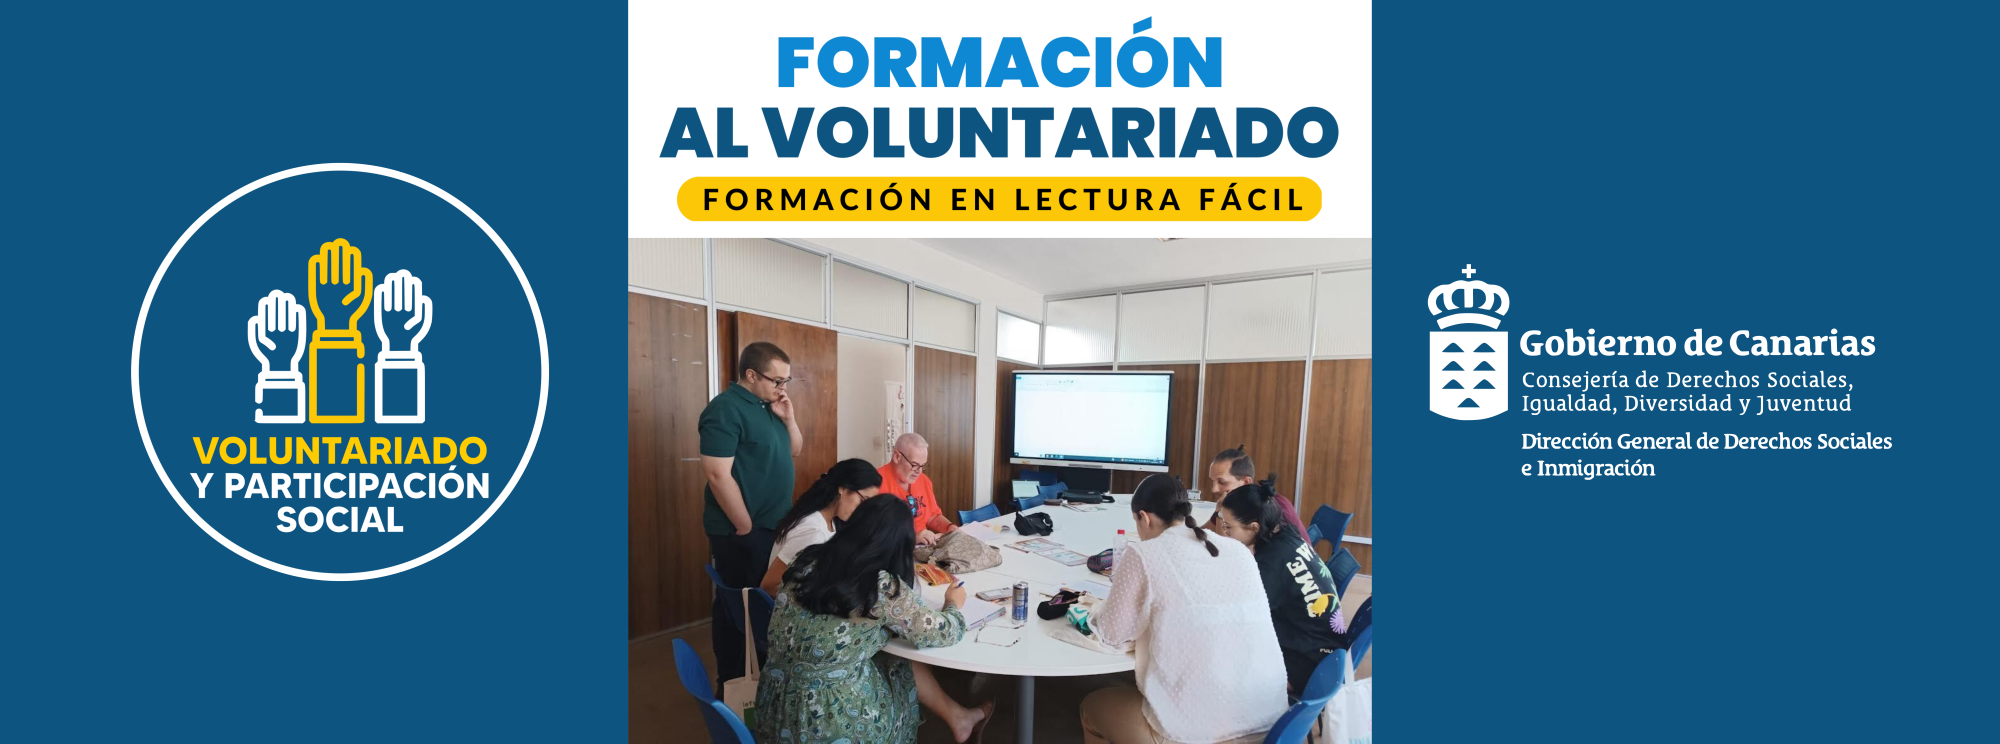 Formación al Voluntariado: Lectura Fácil